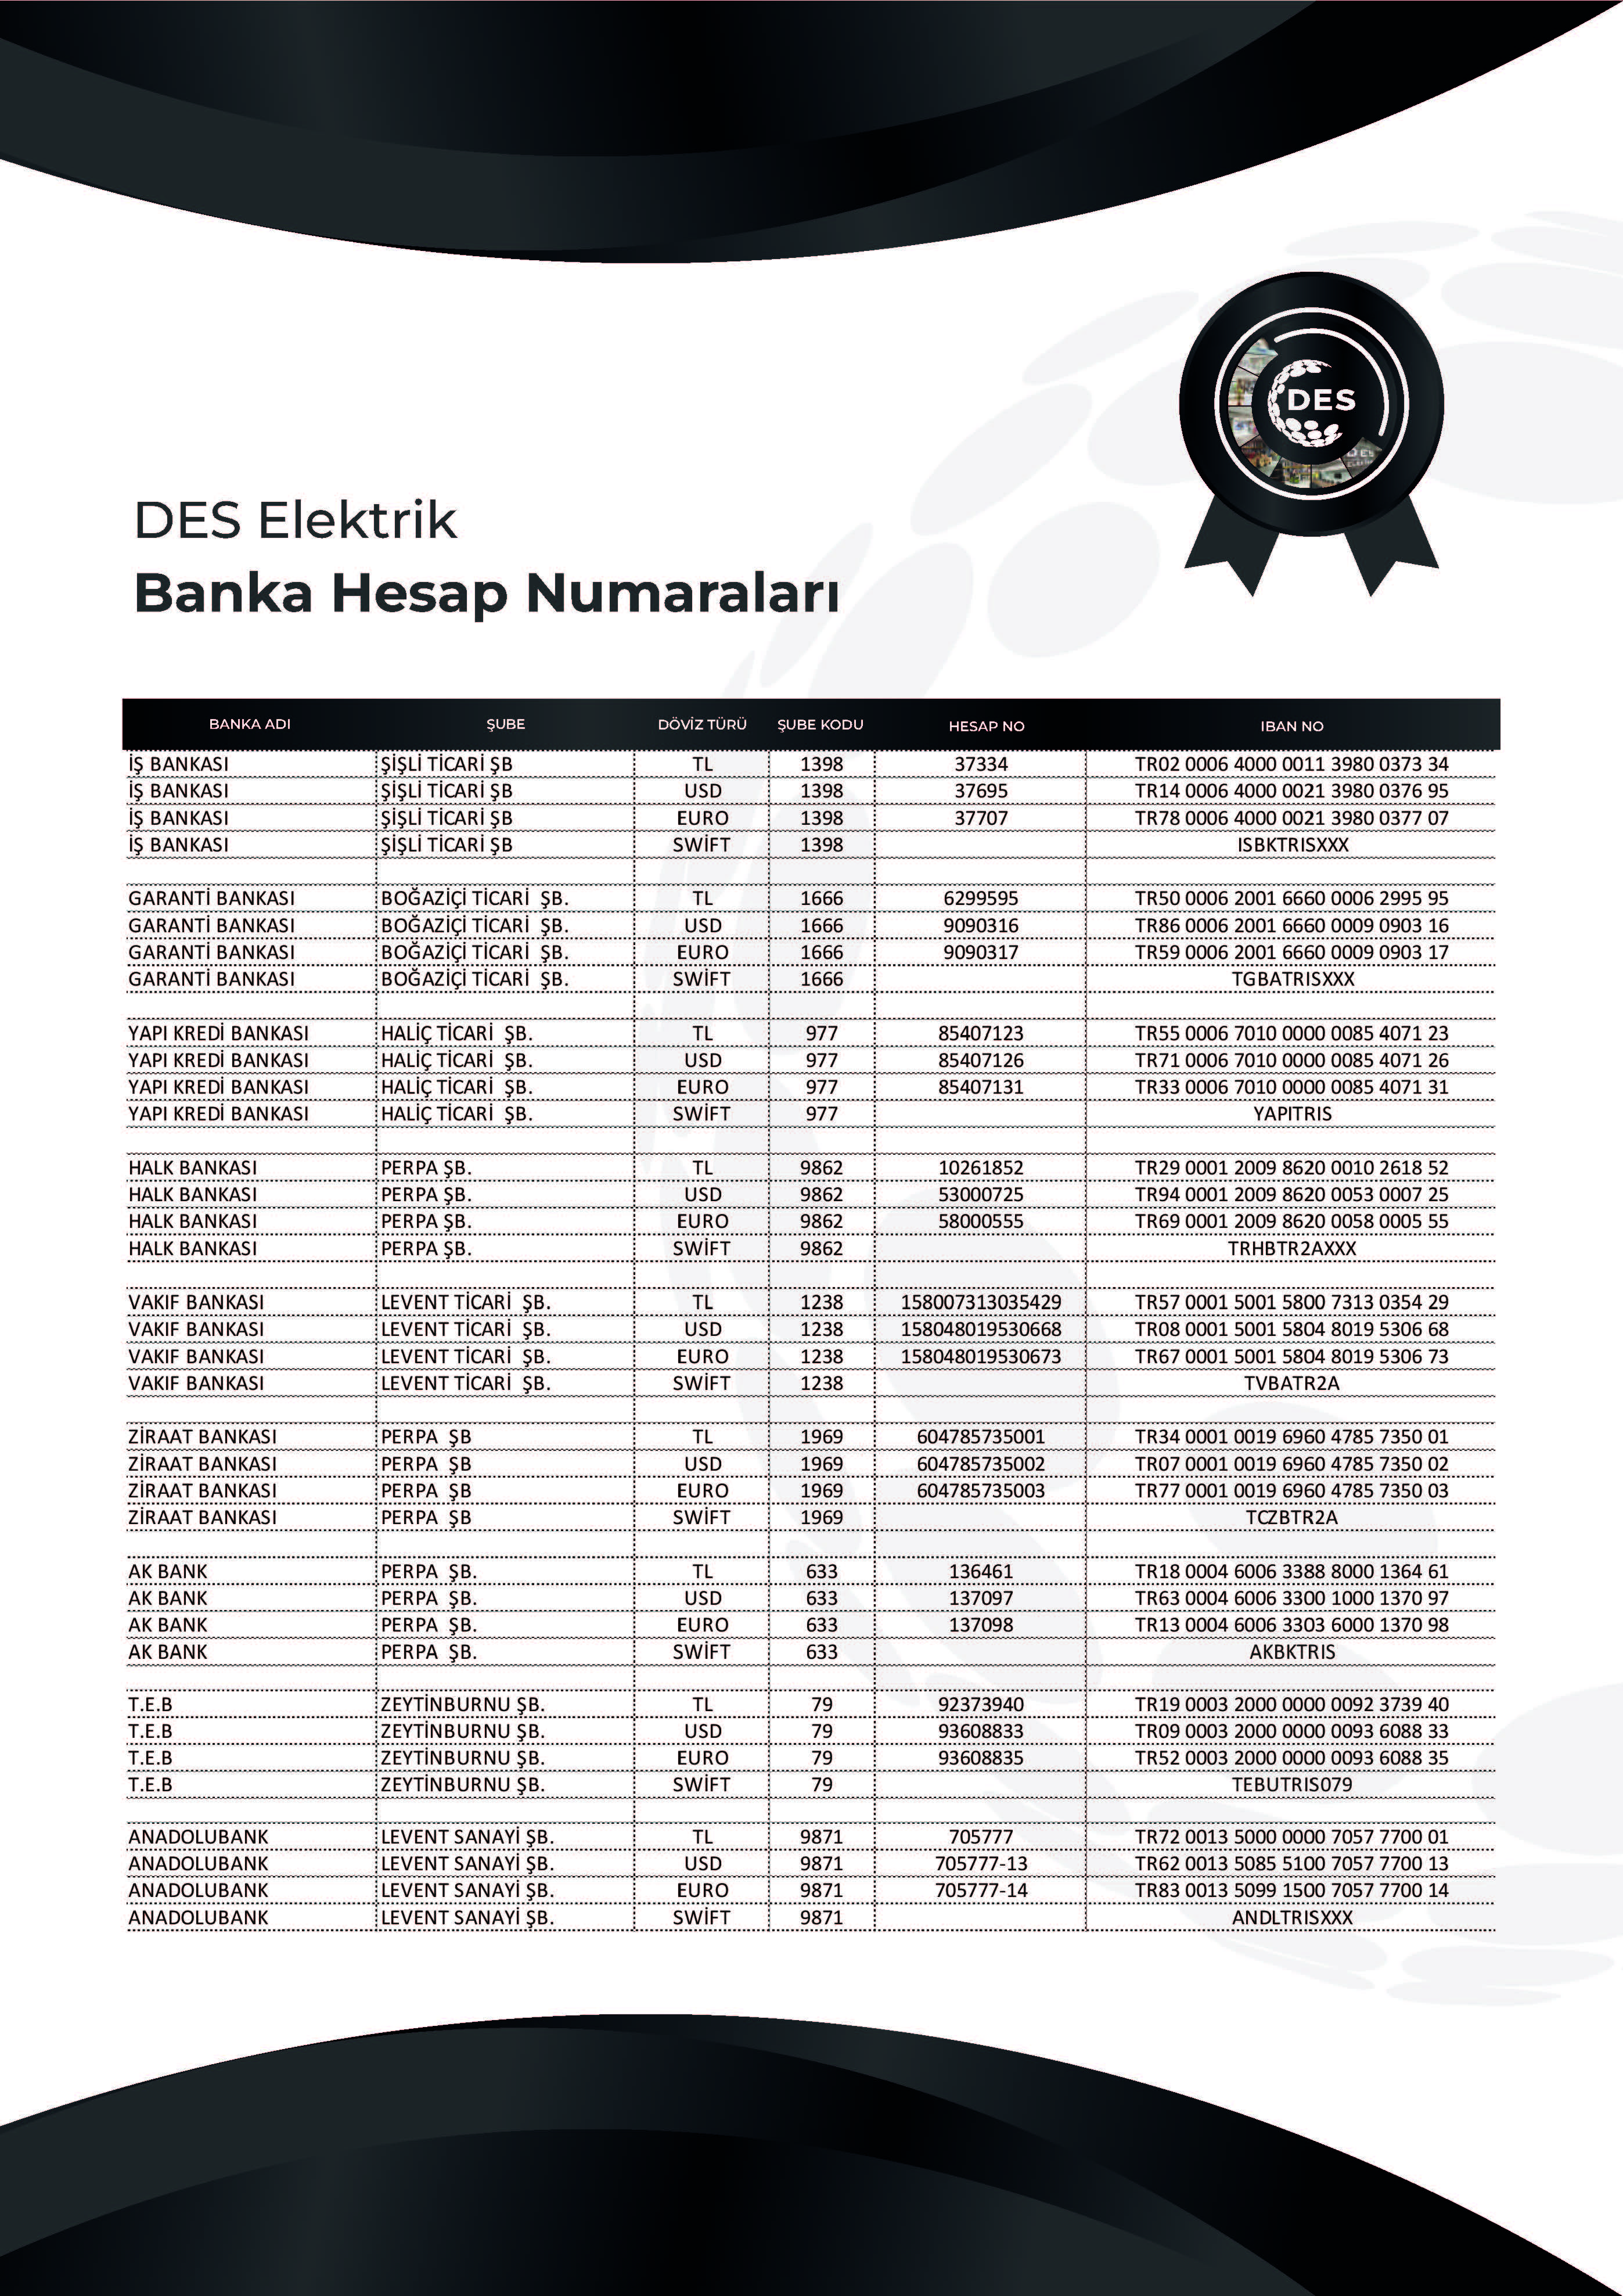 DES_Elektrik_Banka_Hesap_Numaraları.jpg (2.12 MB)